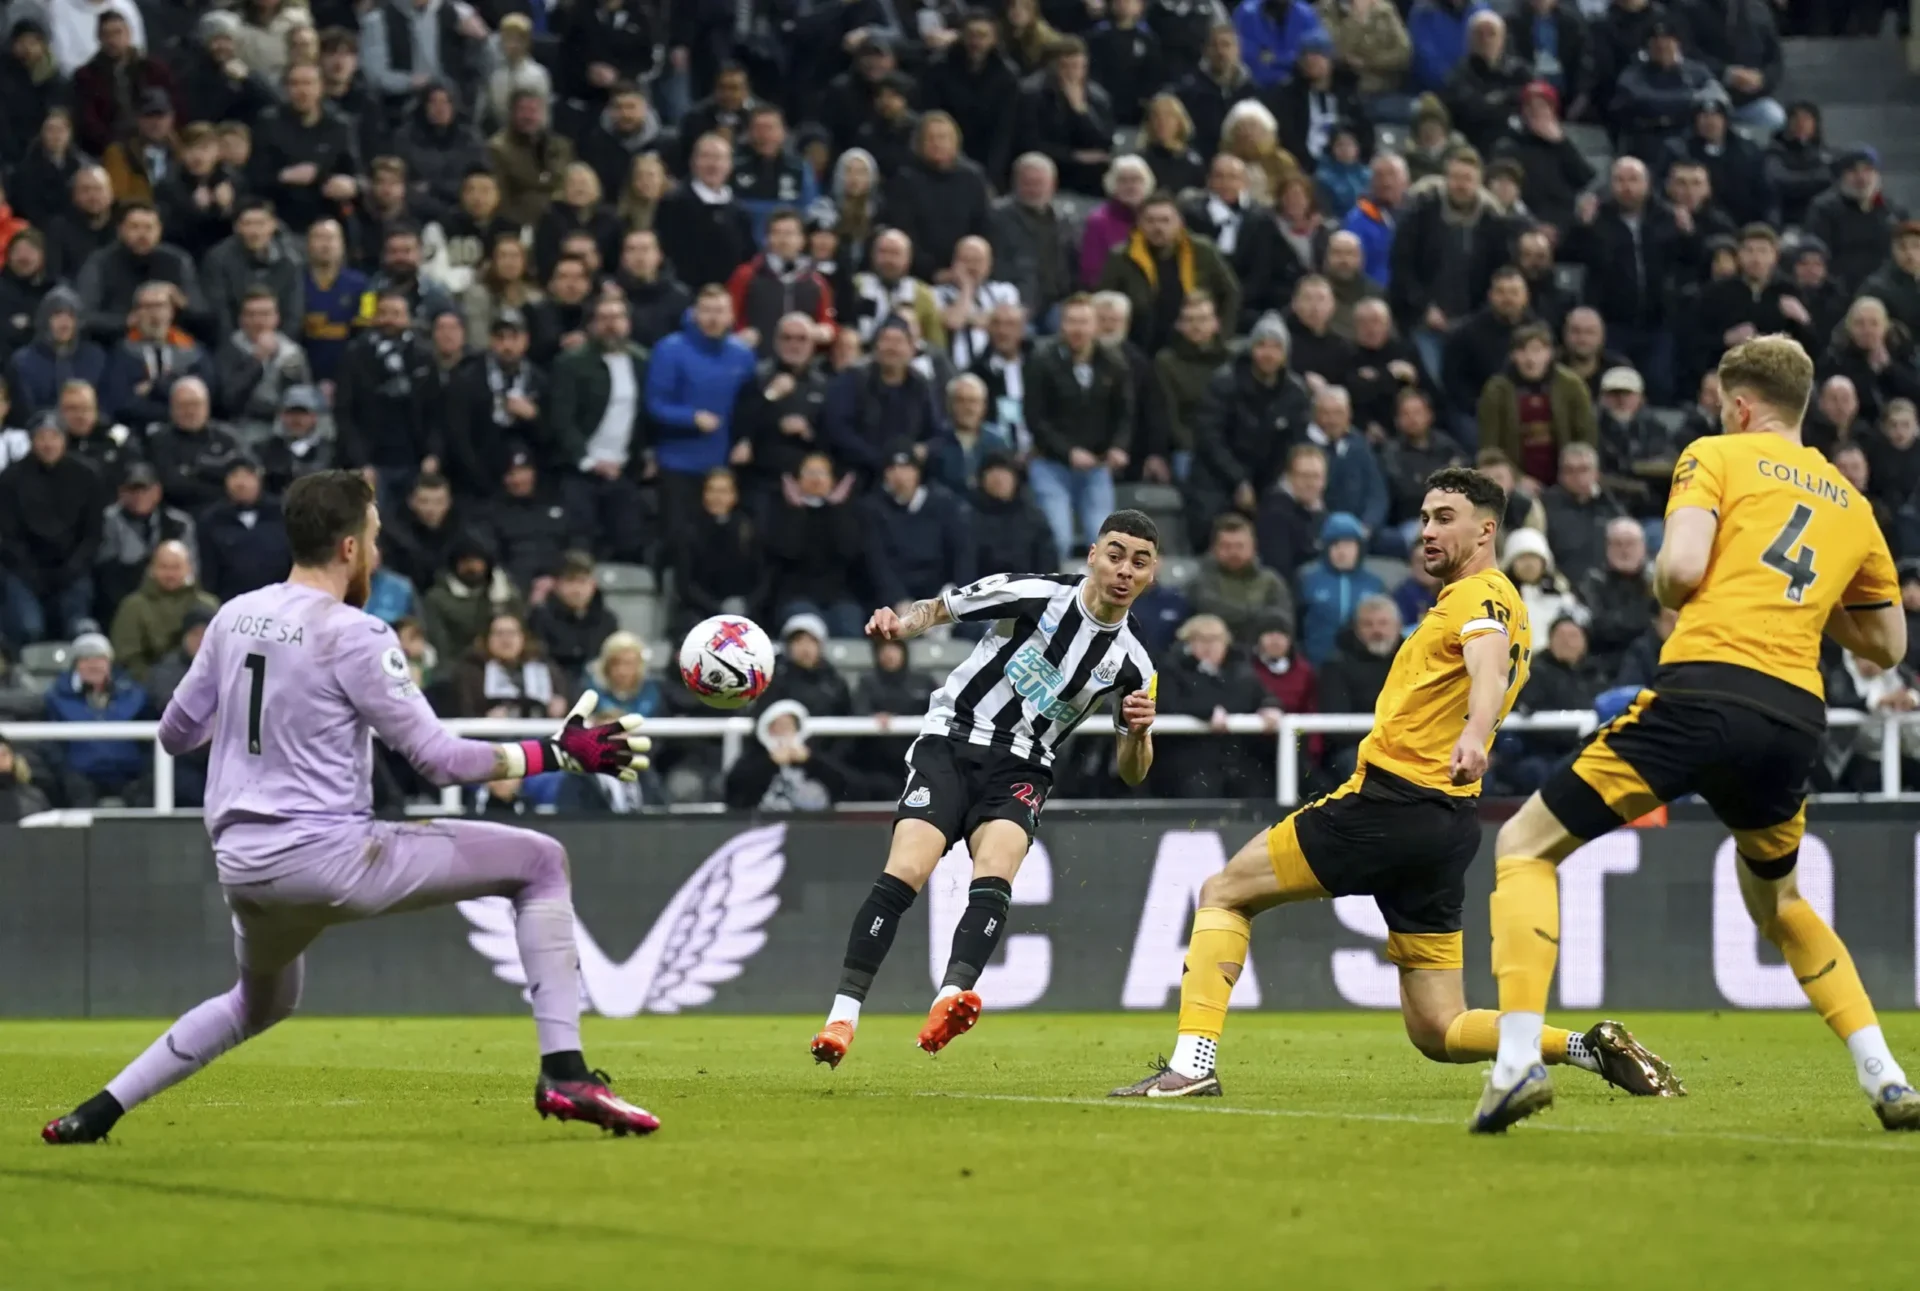 El Newcastle se impone al Wolves en la EPL con un gol de Almirón (2-1)